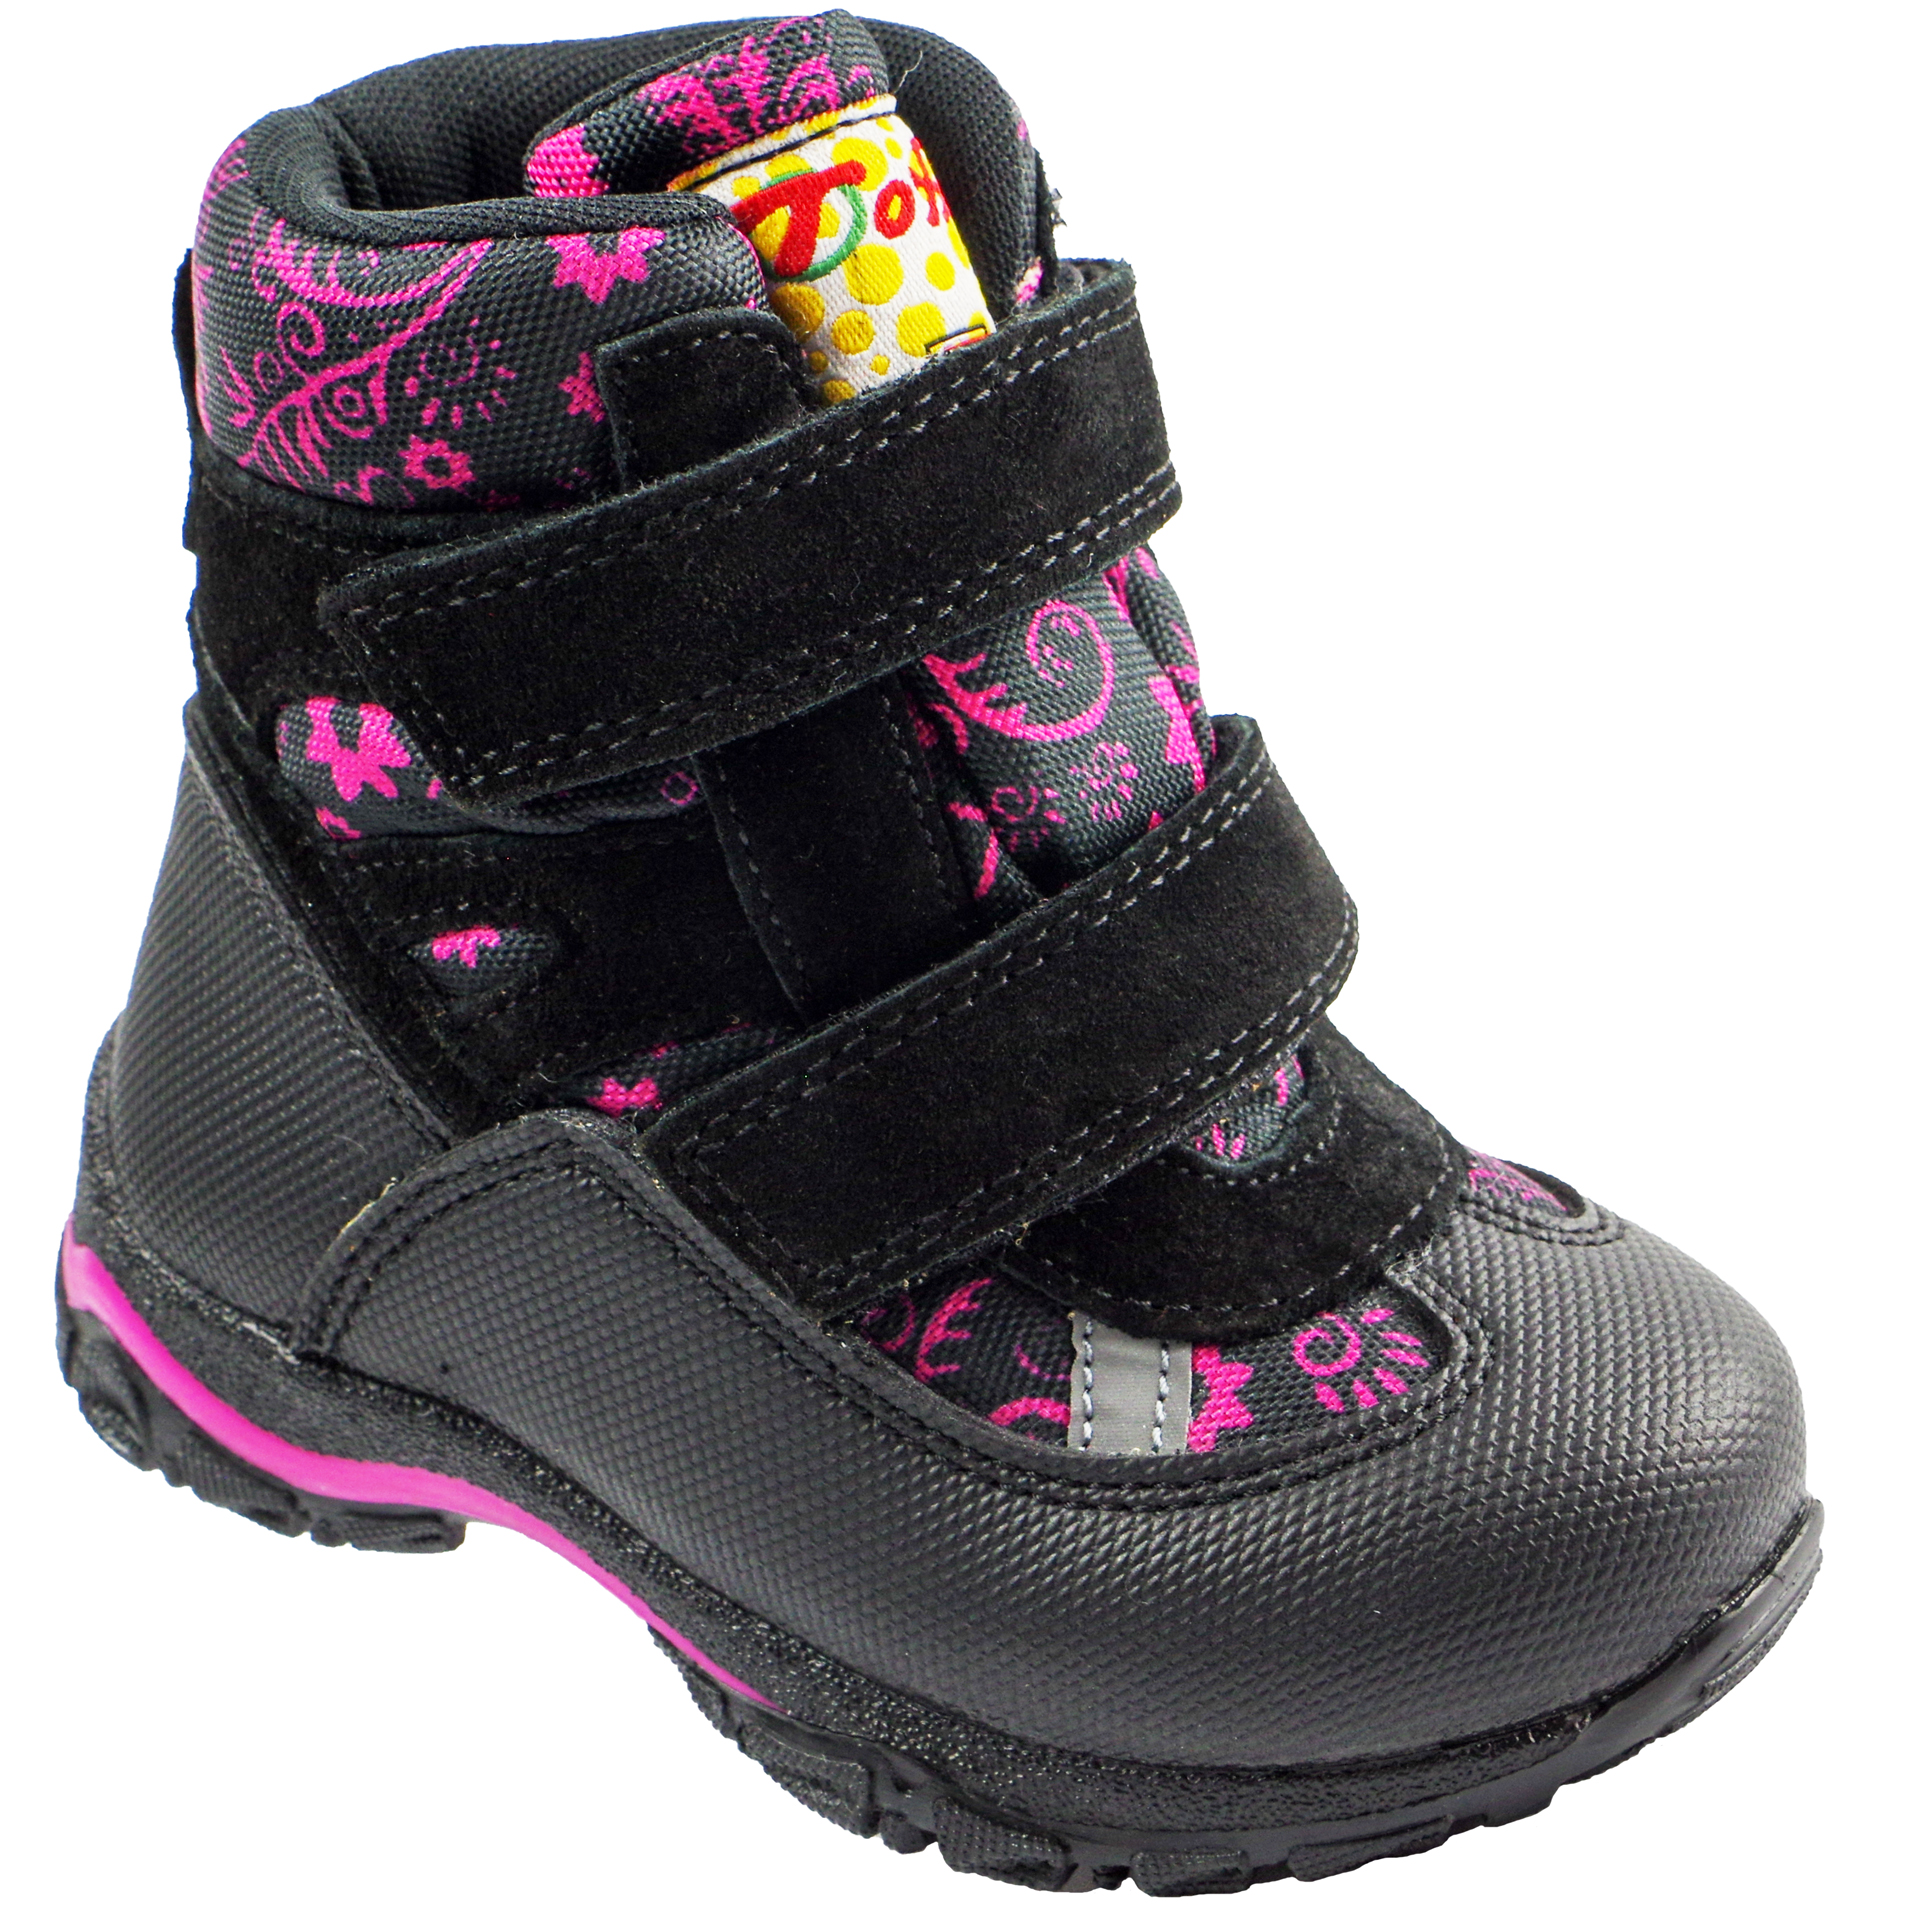 Мембранные зимние ботинки (2150) материал Мембрана, цвет Черный  для девочки 22-25 размеры – Sole Kids, Днепр